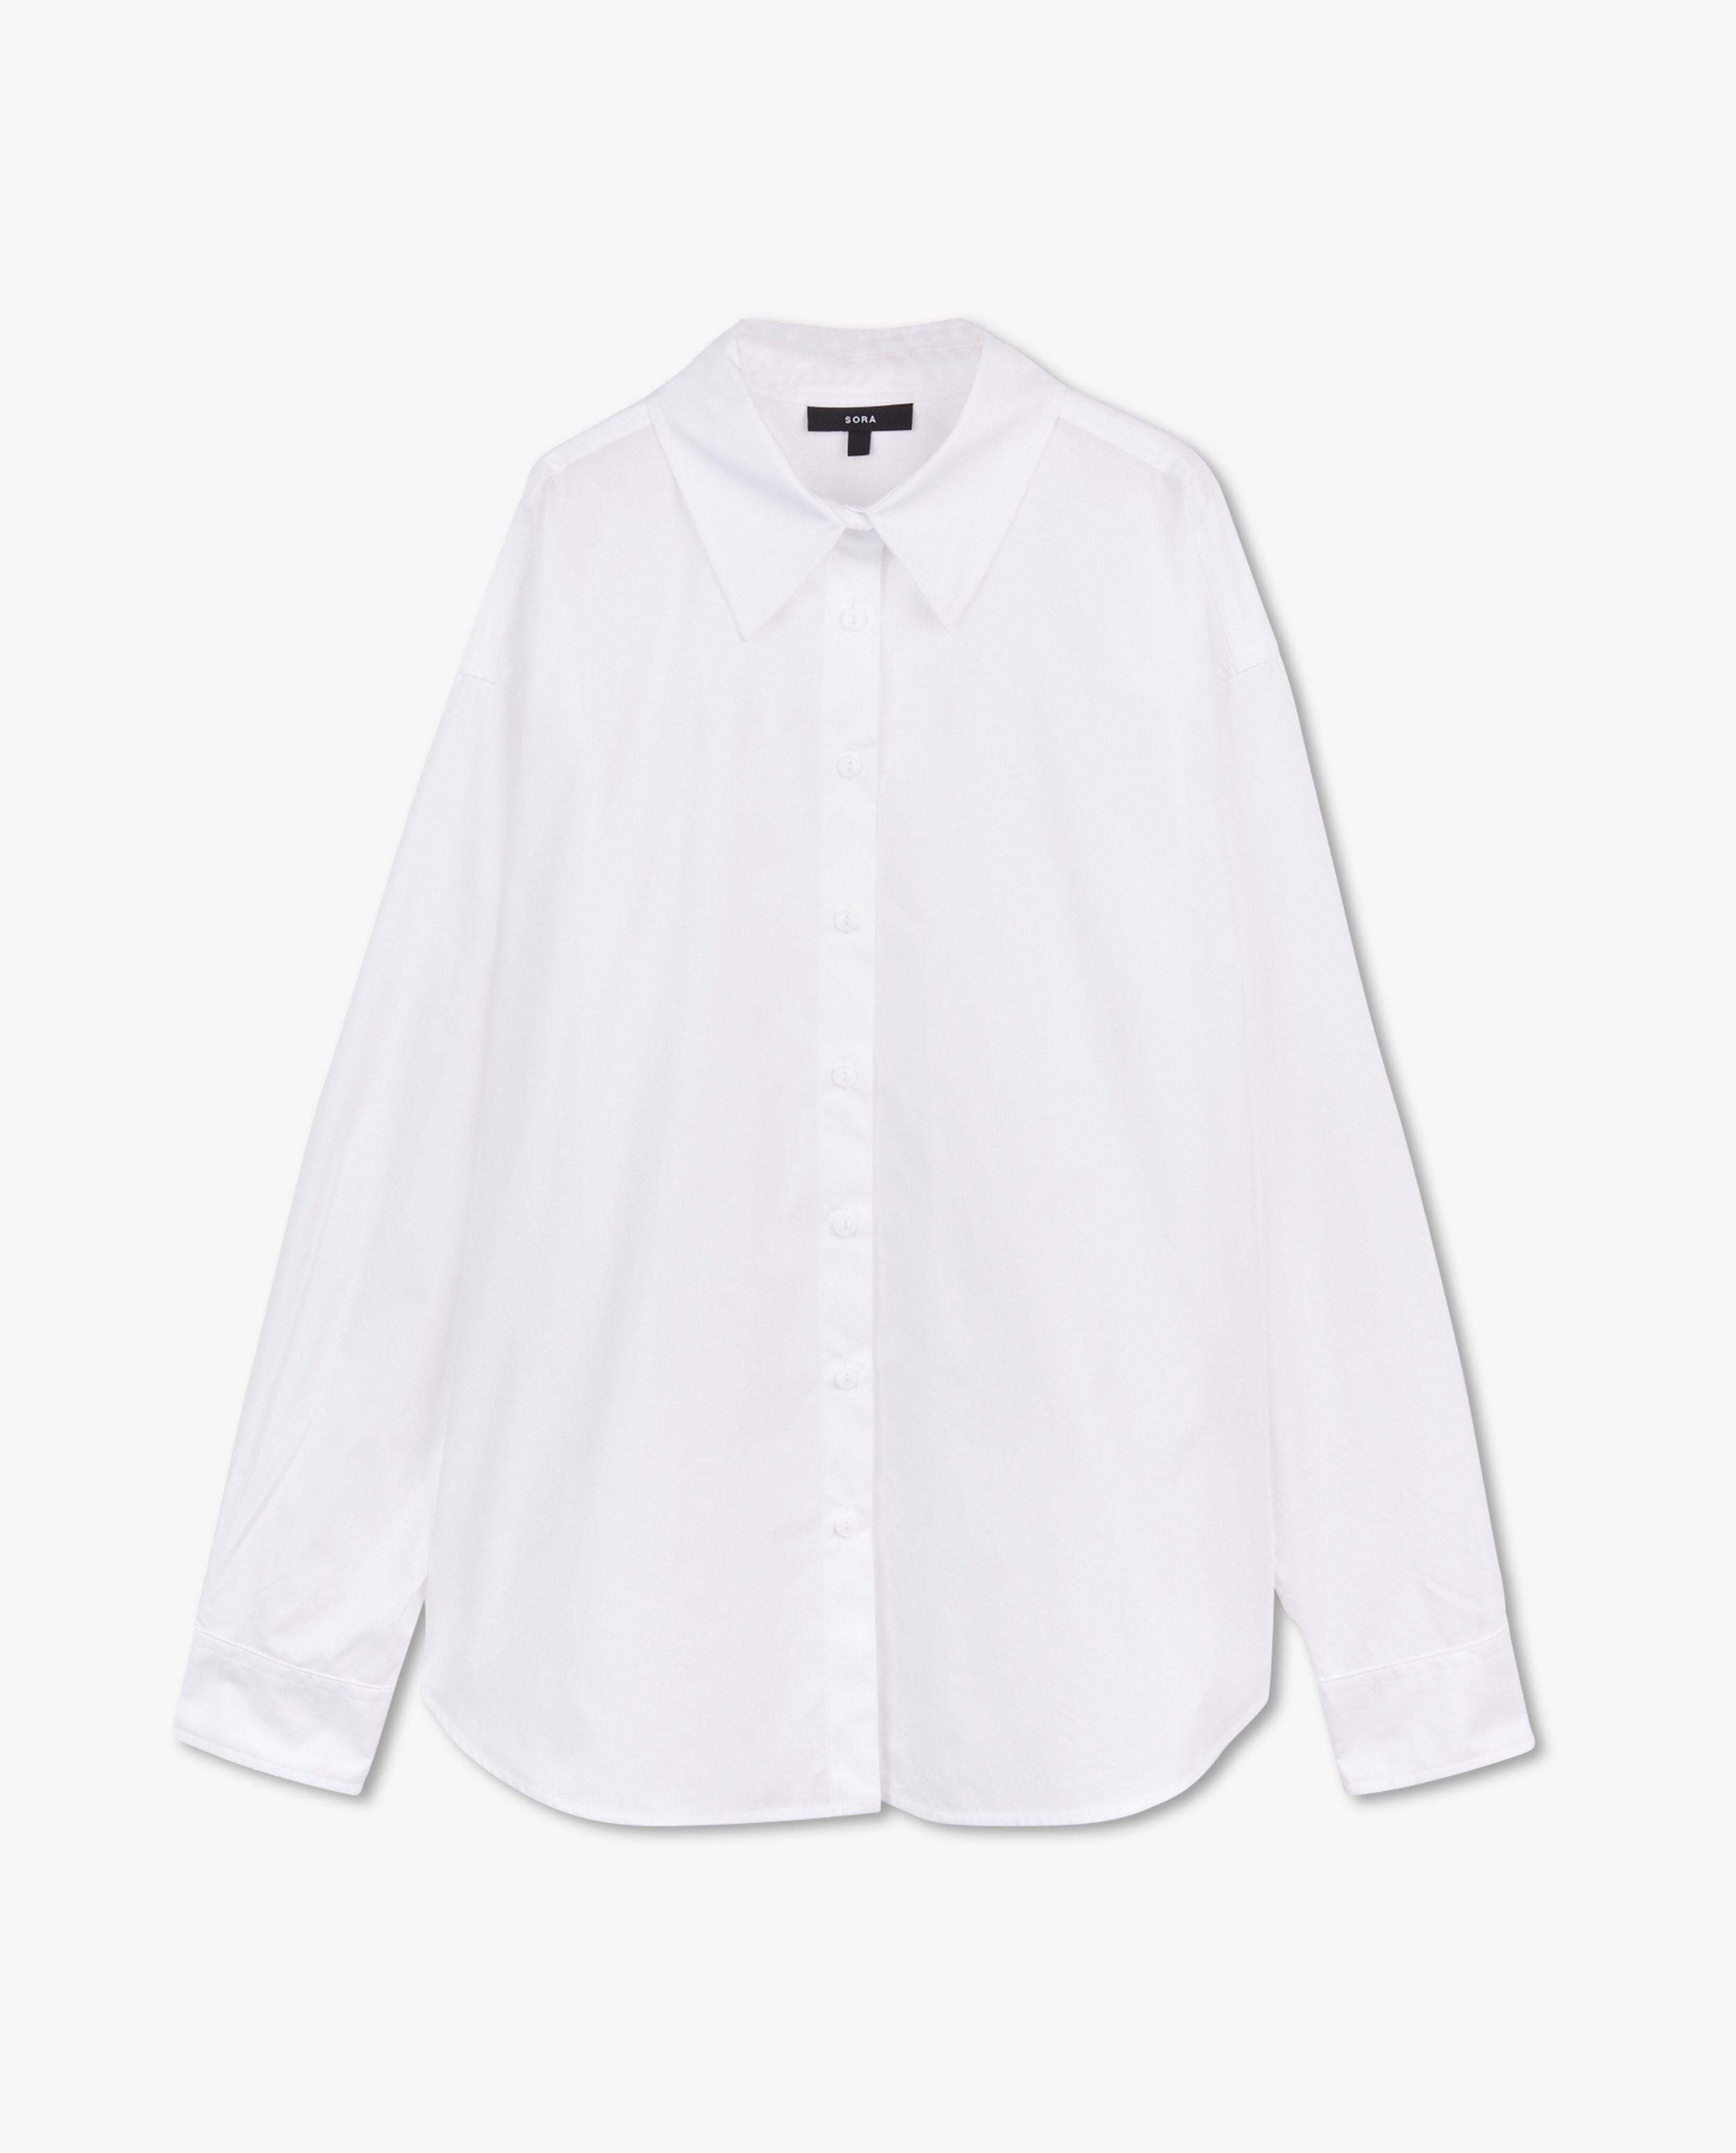 Hemden - Wit hemd Sora